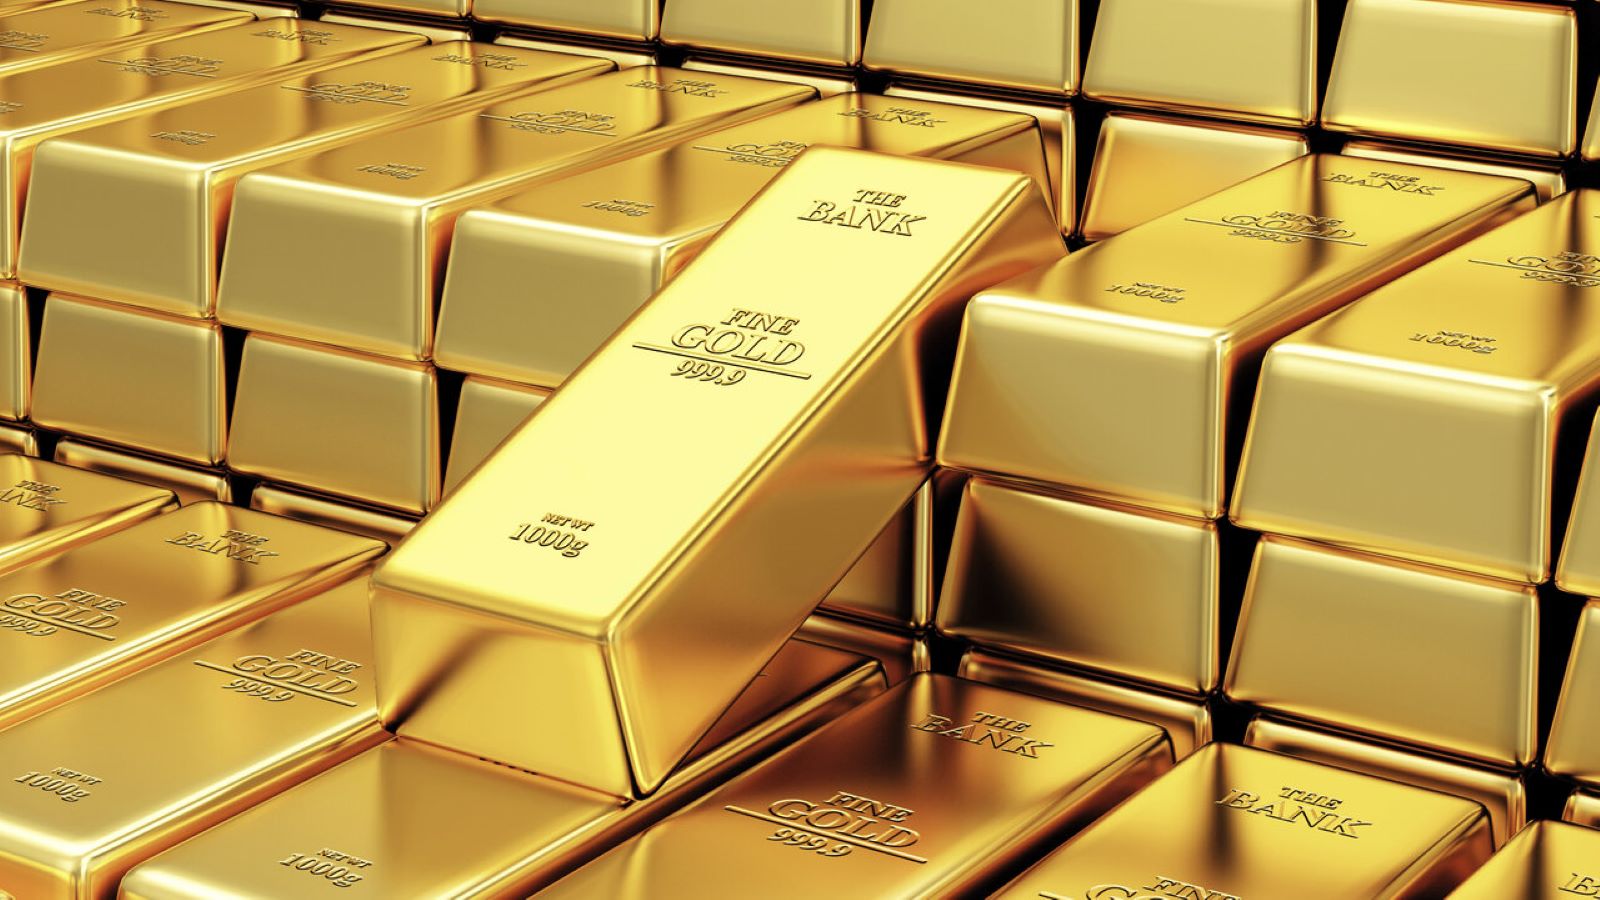  خبير اقتصادي الذهب معدن متناقص والطلب عليه متزايد